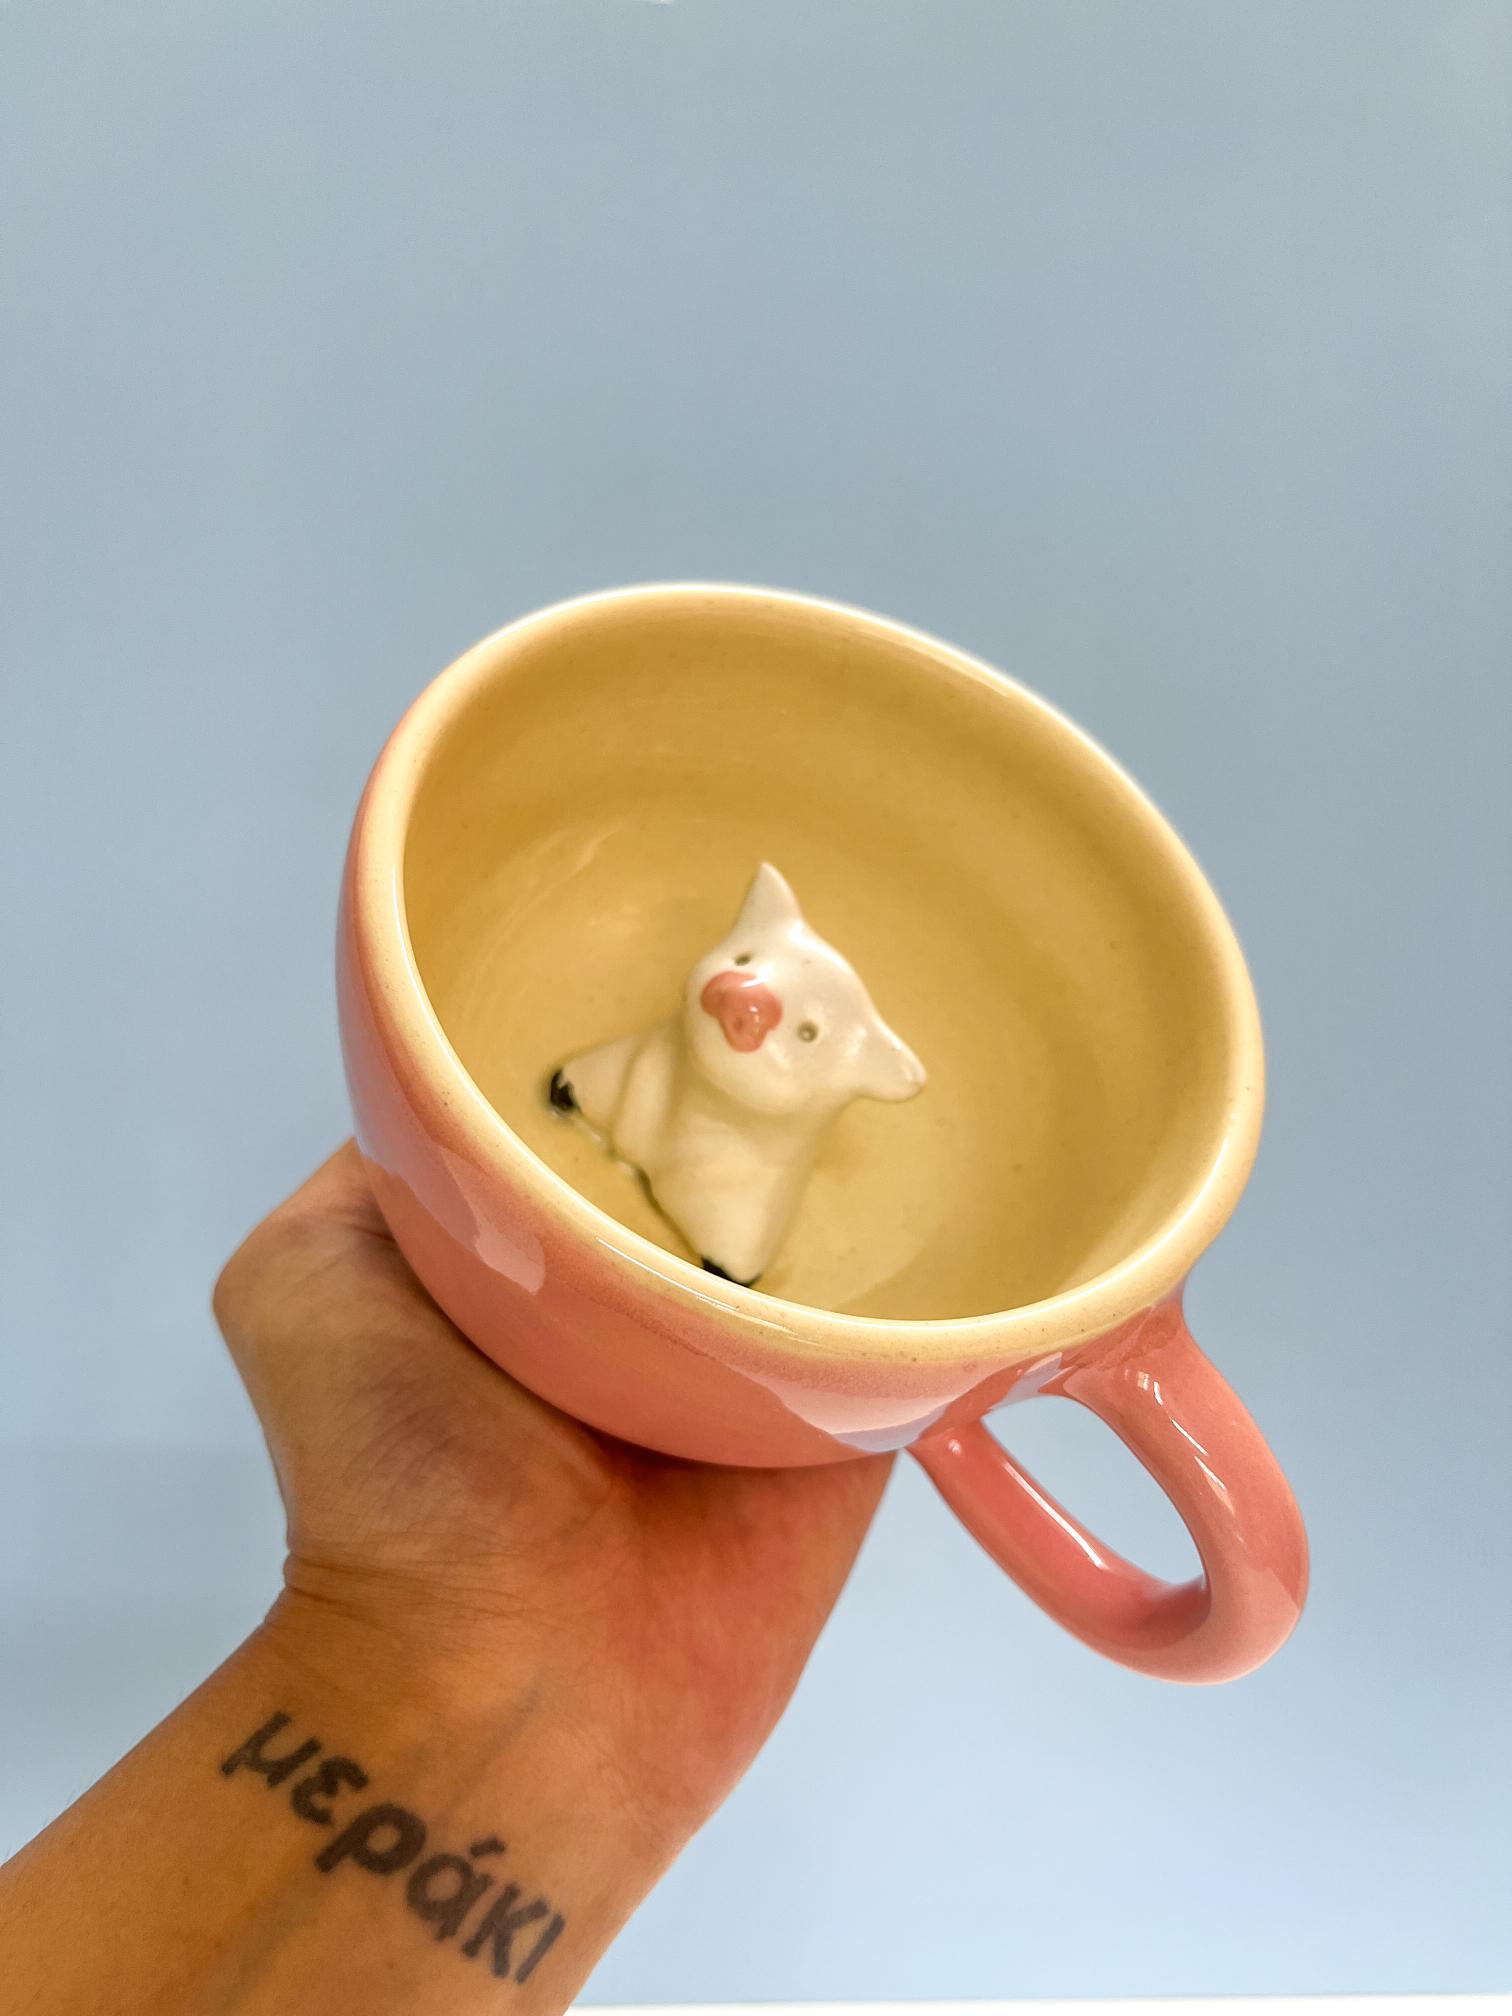 The Orby House Pig Miniature Mug